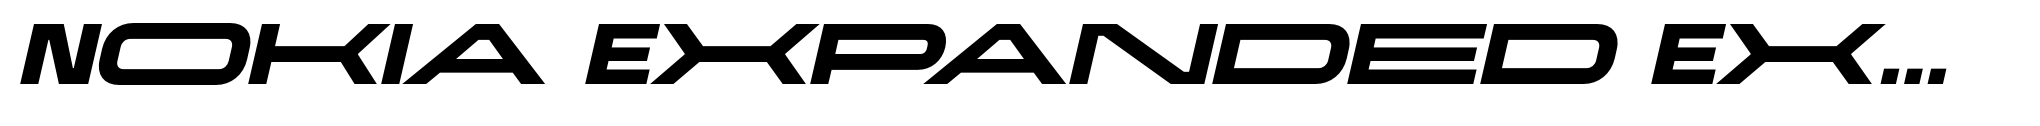 Nokia Expanded Extra Bold Italic image